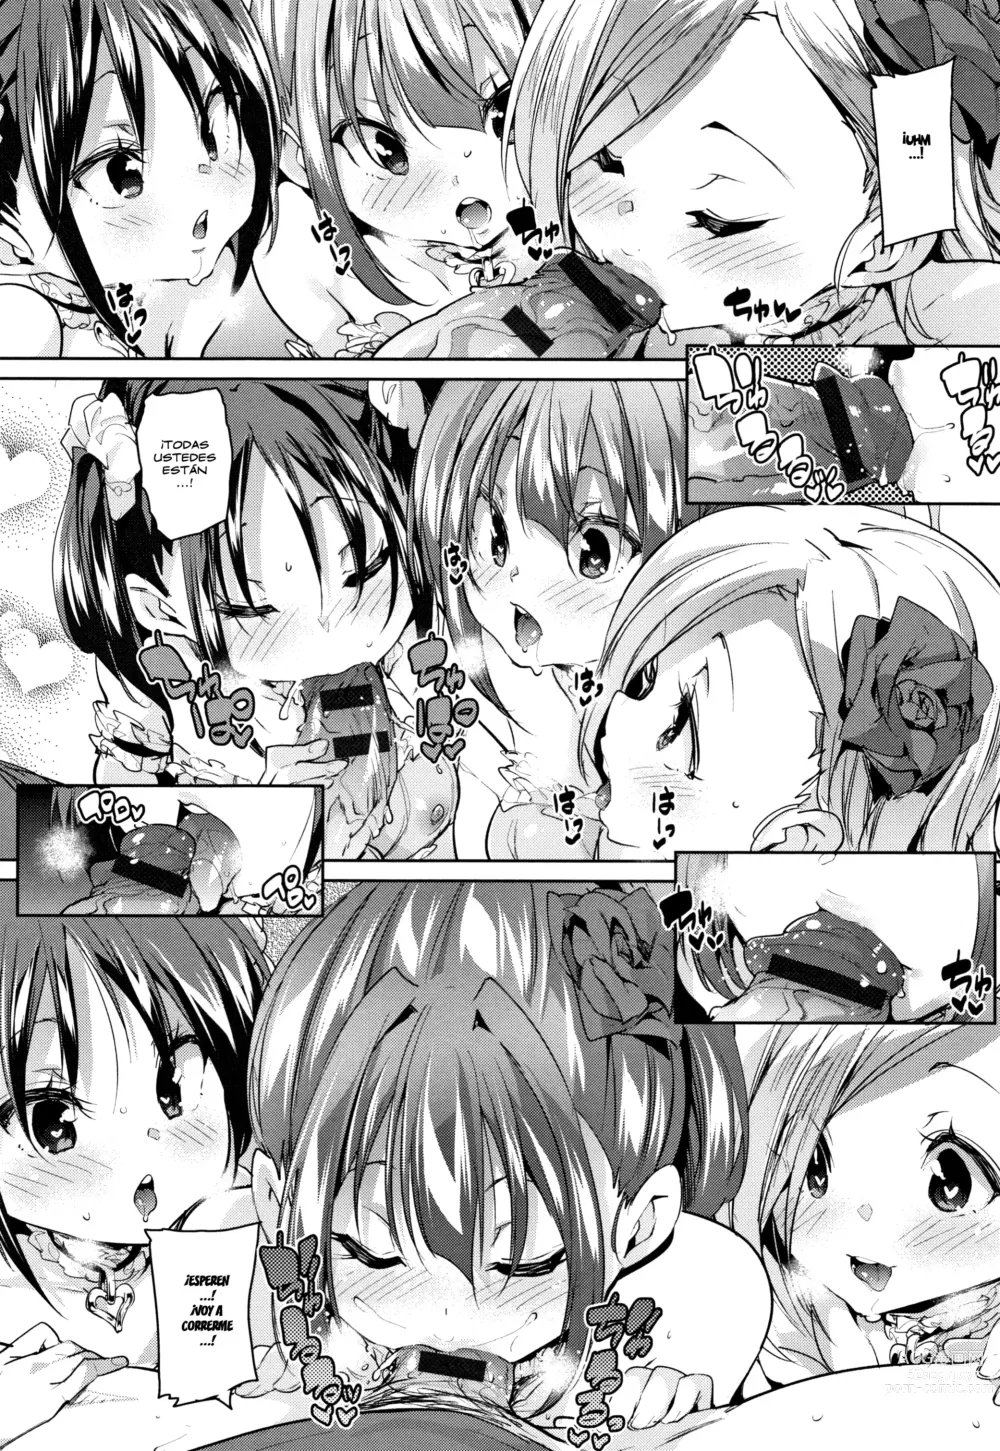 Page 210 of manga - Panpan Yawaraka Ecchi Ana